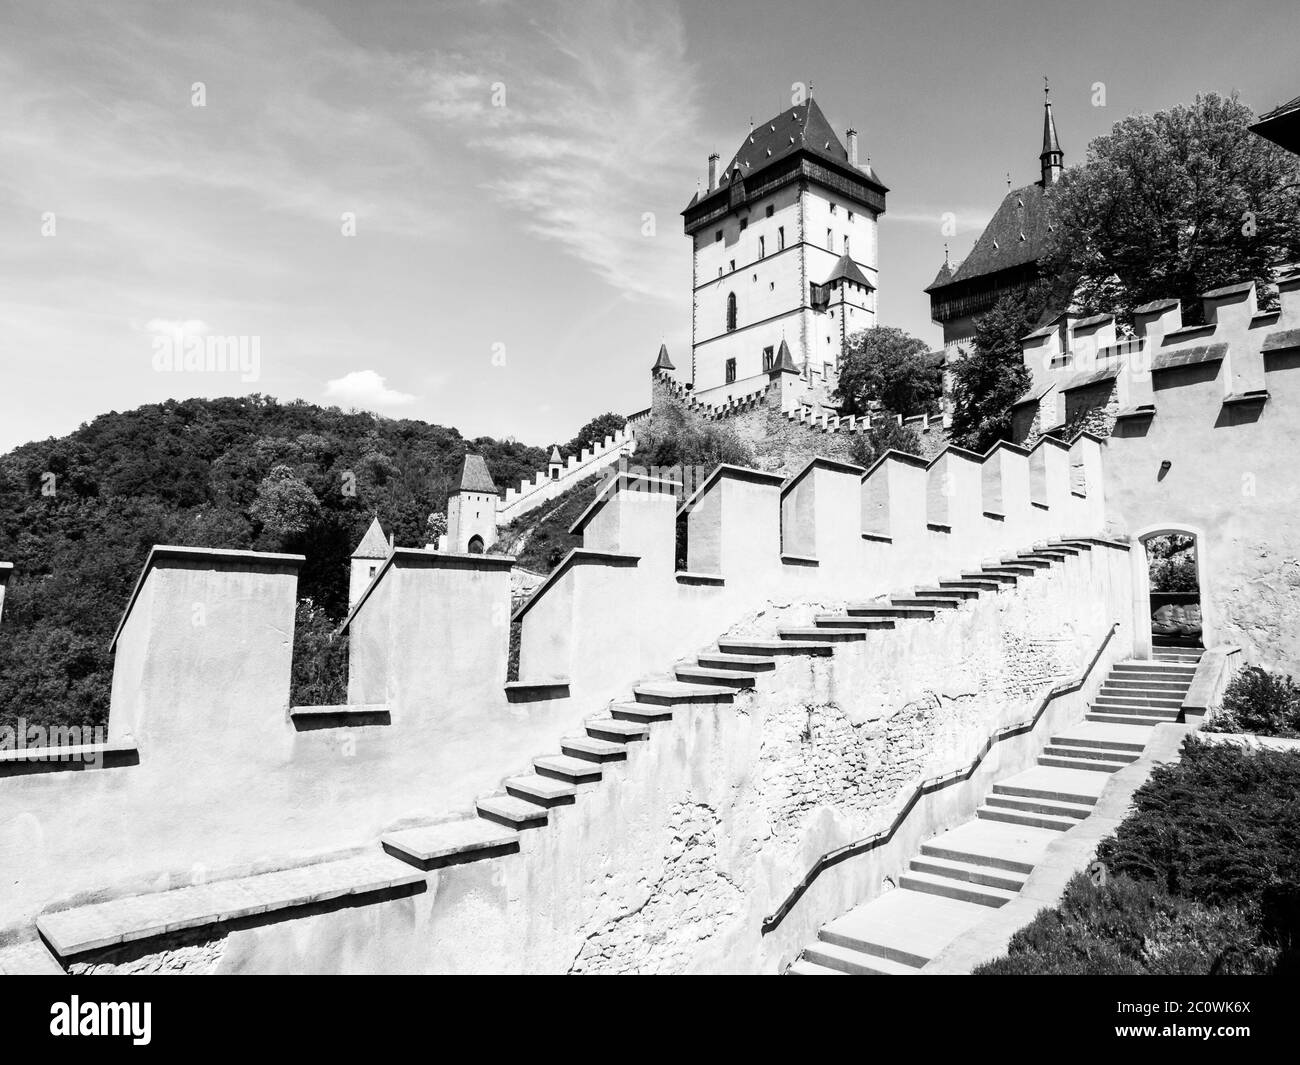 Castello reale di Karlstejn, castello gotico medievale con mura di fortificazione in estate soleggiato giorno. Repubblica Ceca. Immagine in bianco e nero. Foto Stock